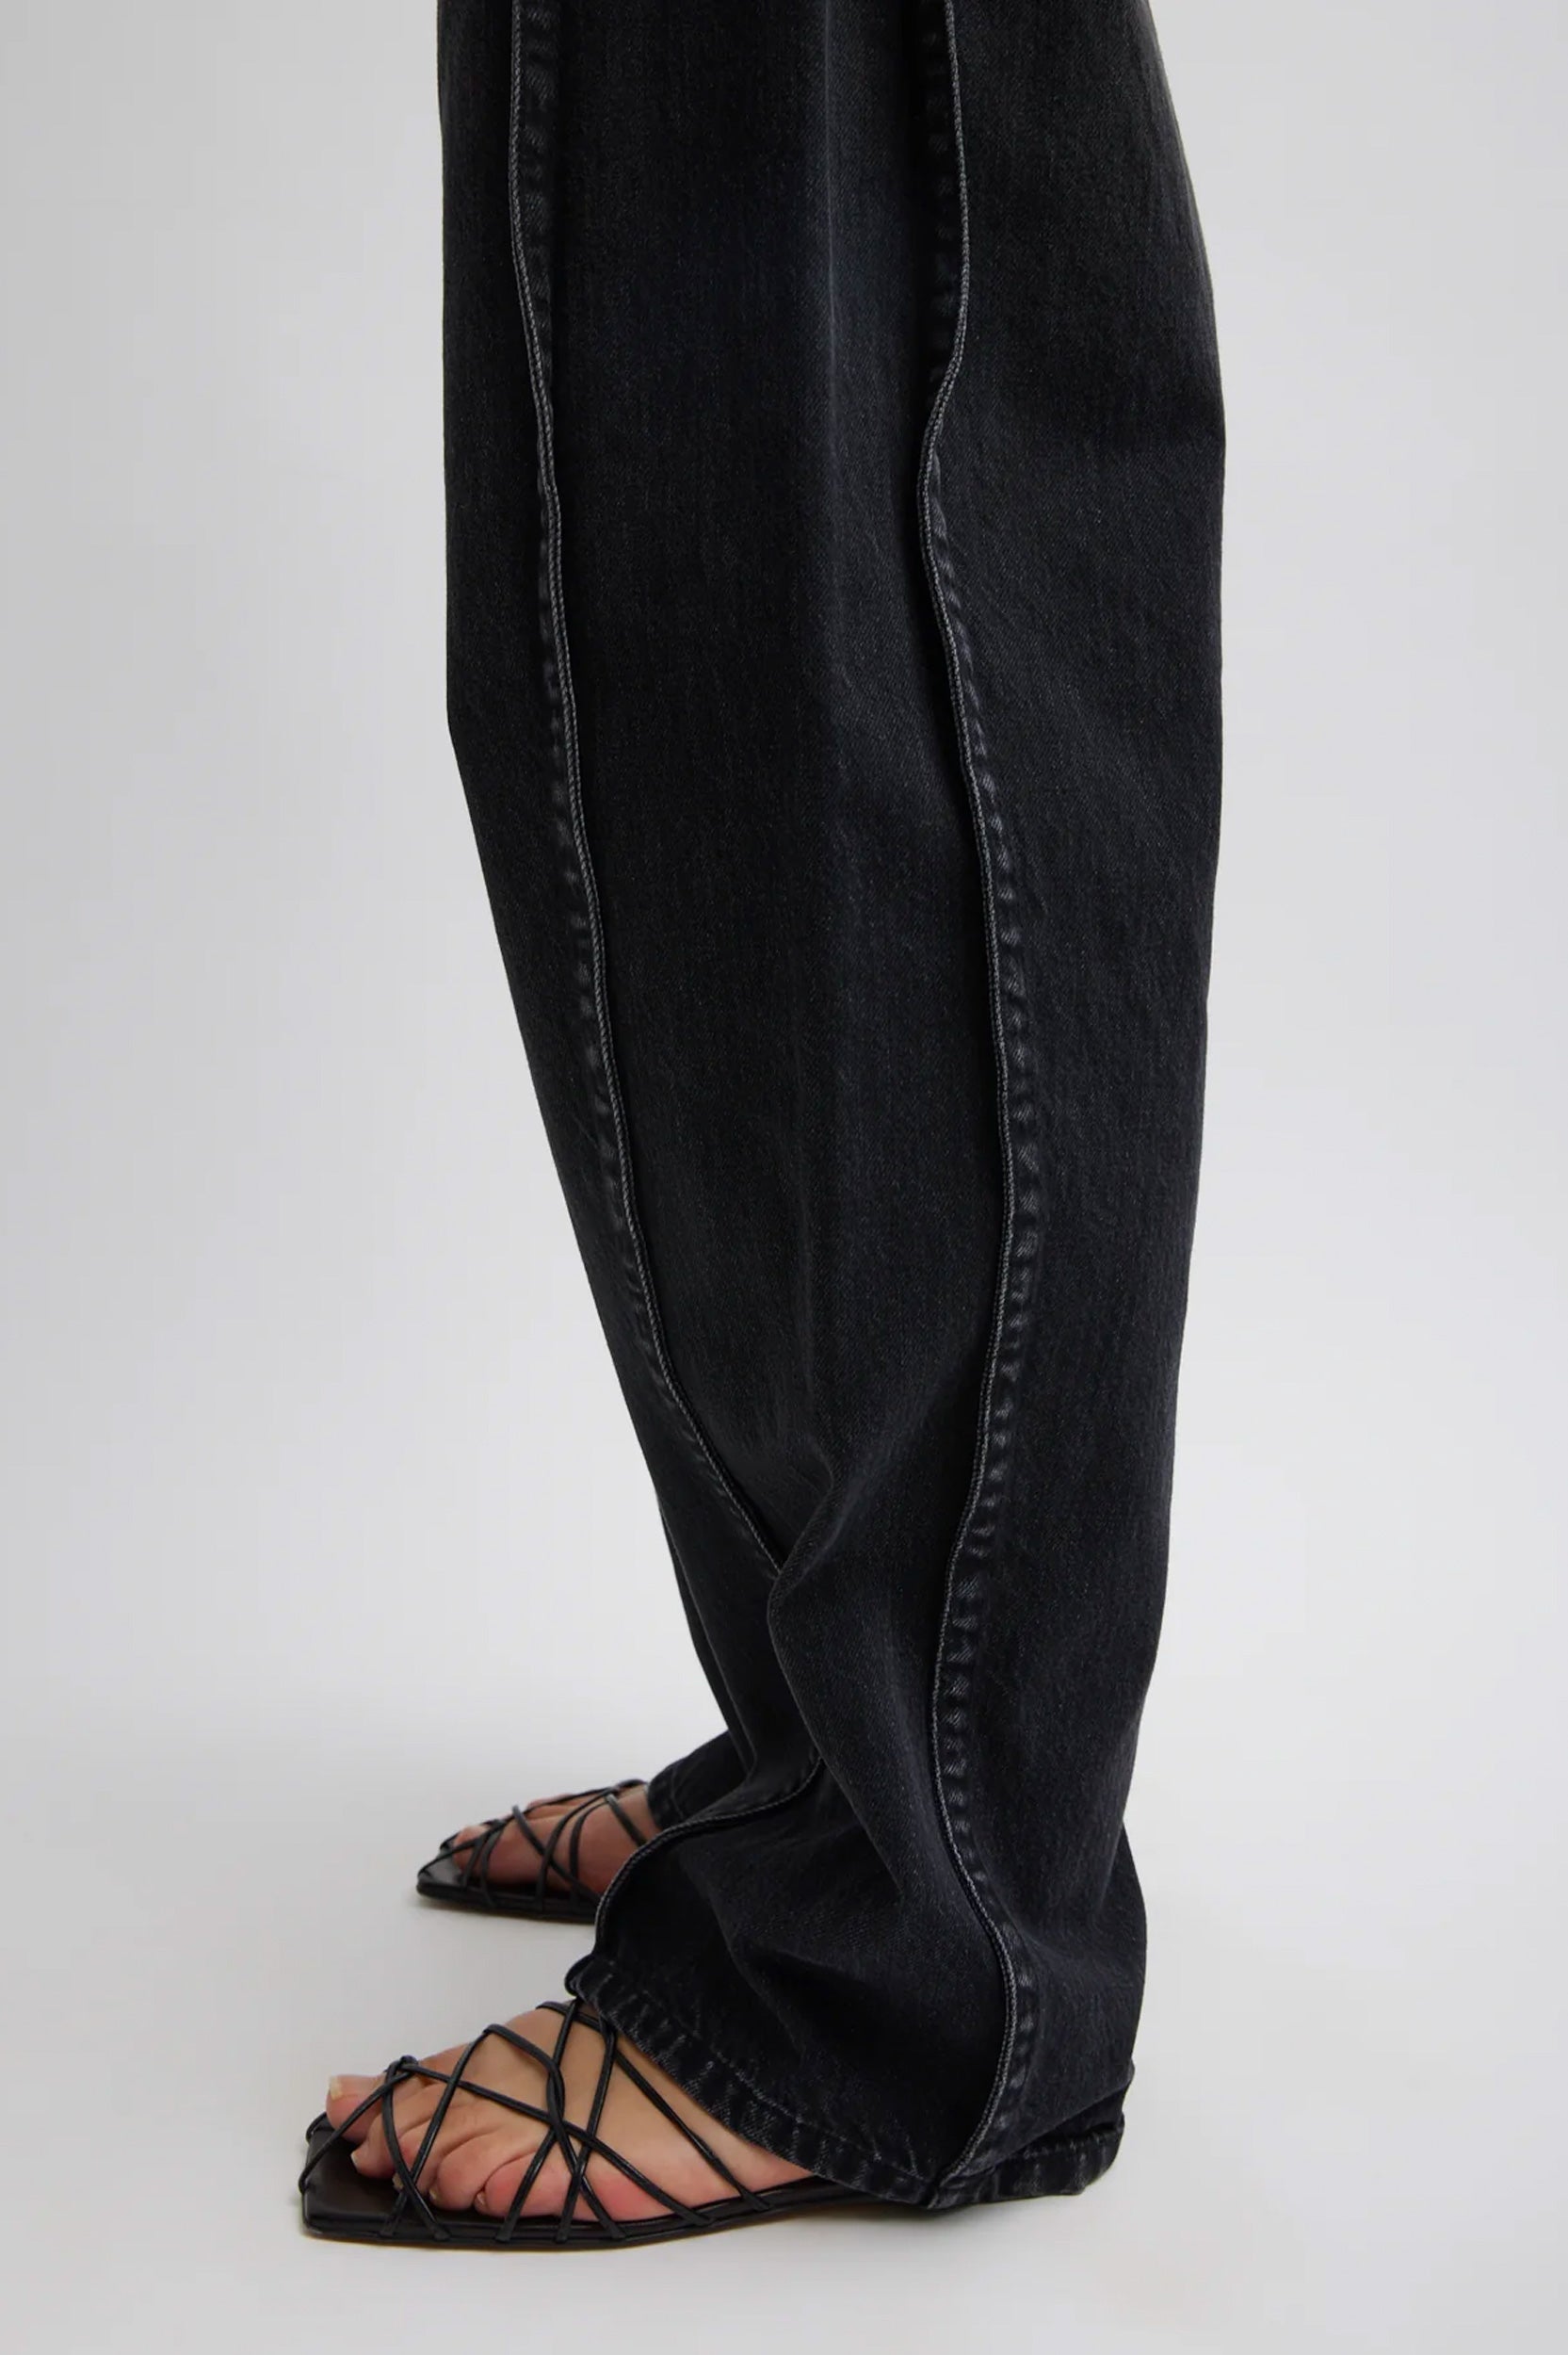 Vintage Black Denim Tuck Jean - Short